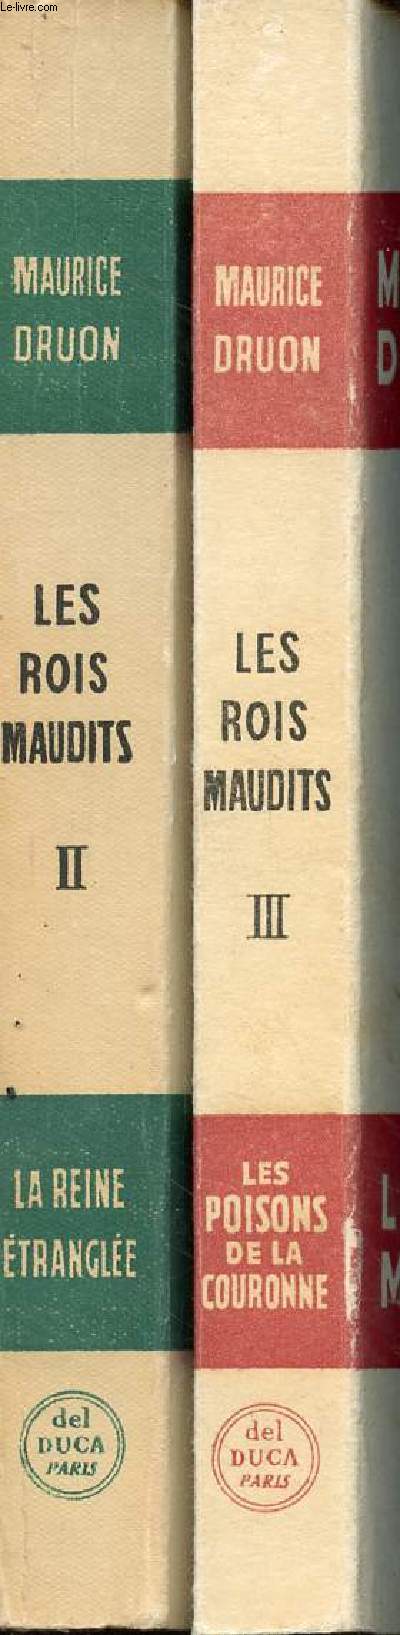 Les Rois maudits en 2 volumes (vol.2+3) vol.2: la Reine trangle 1314-1315 - vol.3: les poisons de la couronne 1315-1316